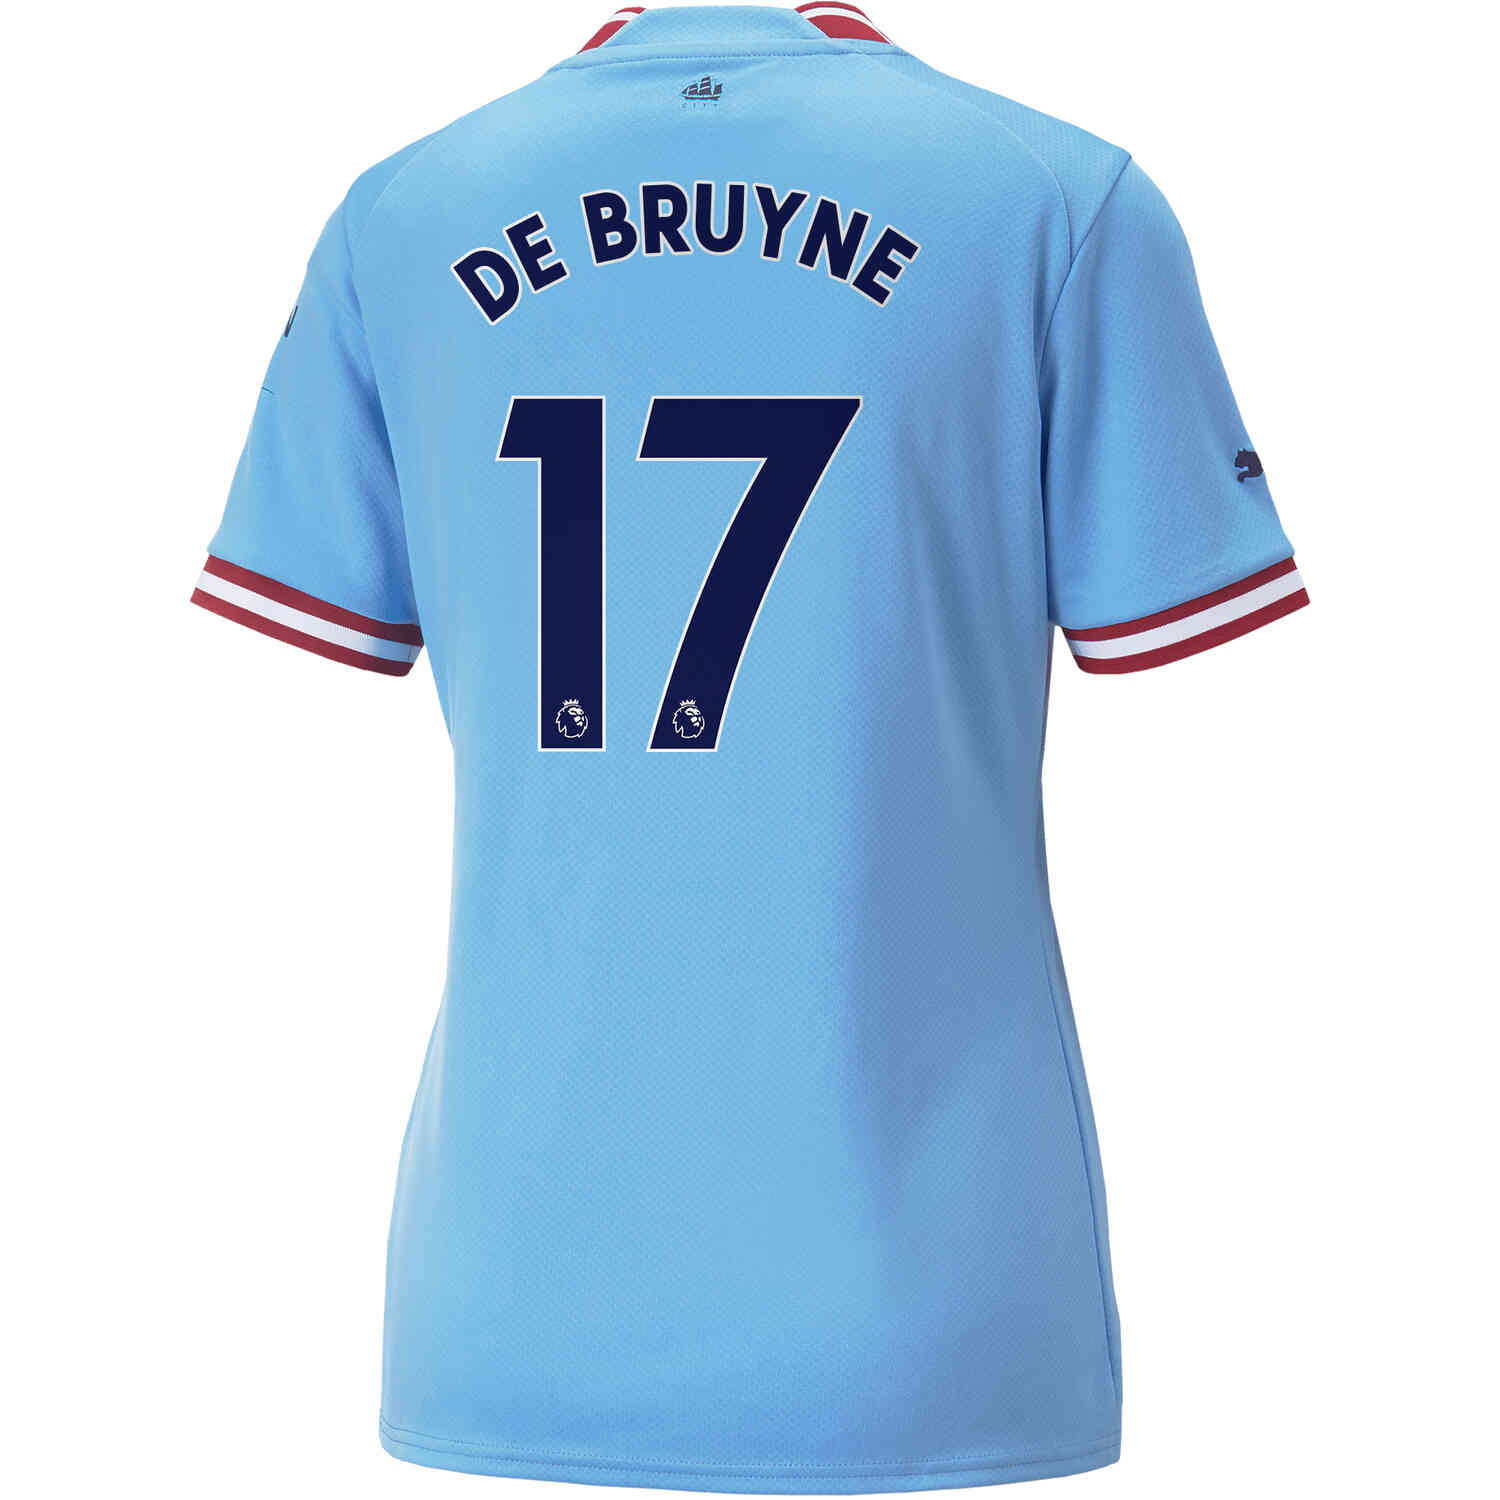 De Bruyne Jersey and Gear - SoccerPro